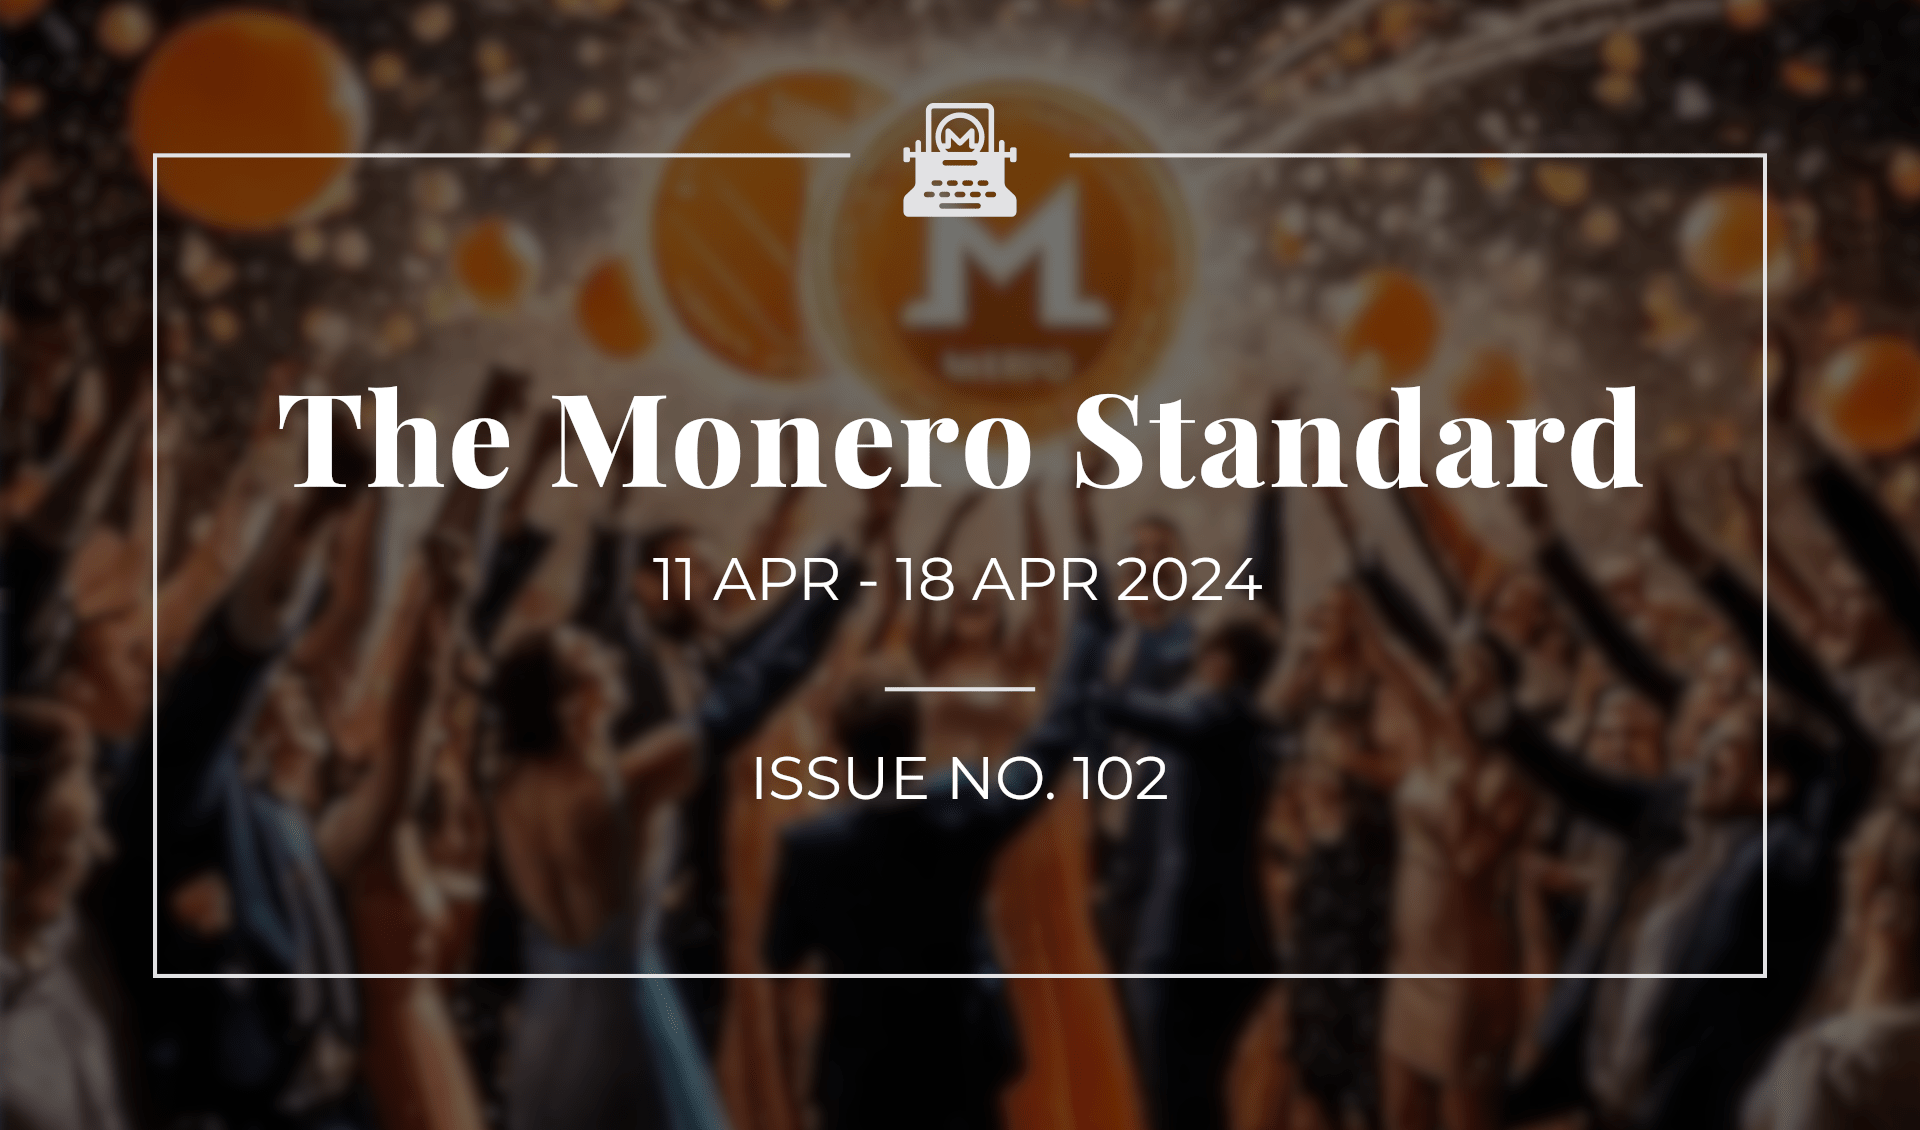 The Monero Standard #102: 11 Apr 2024 - 18 Apr 2024